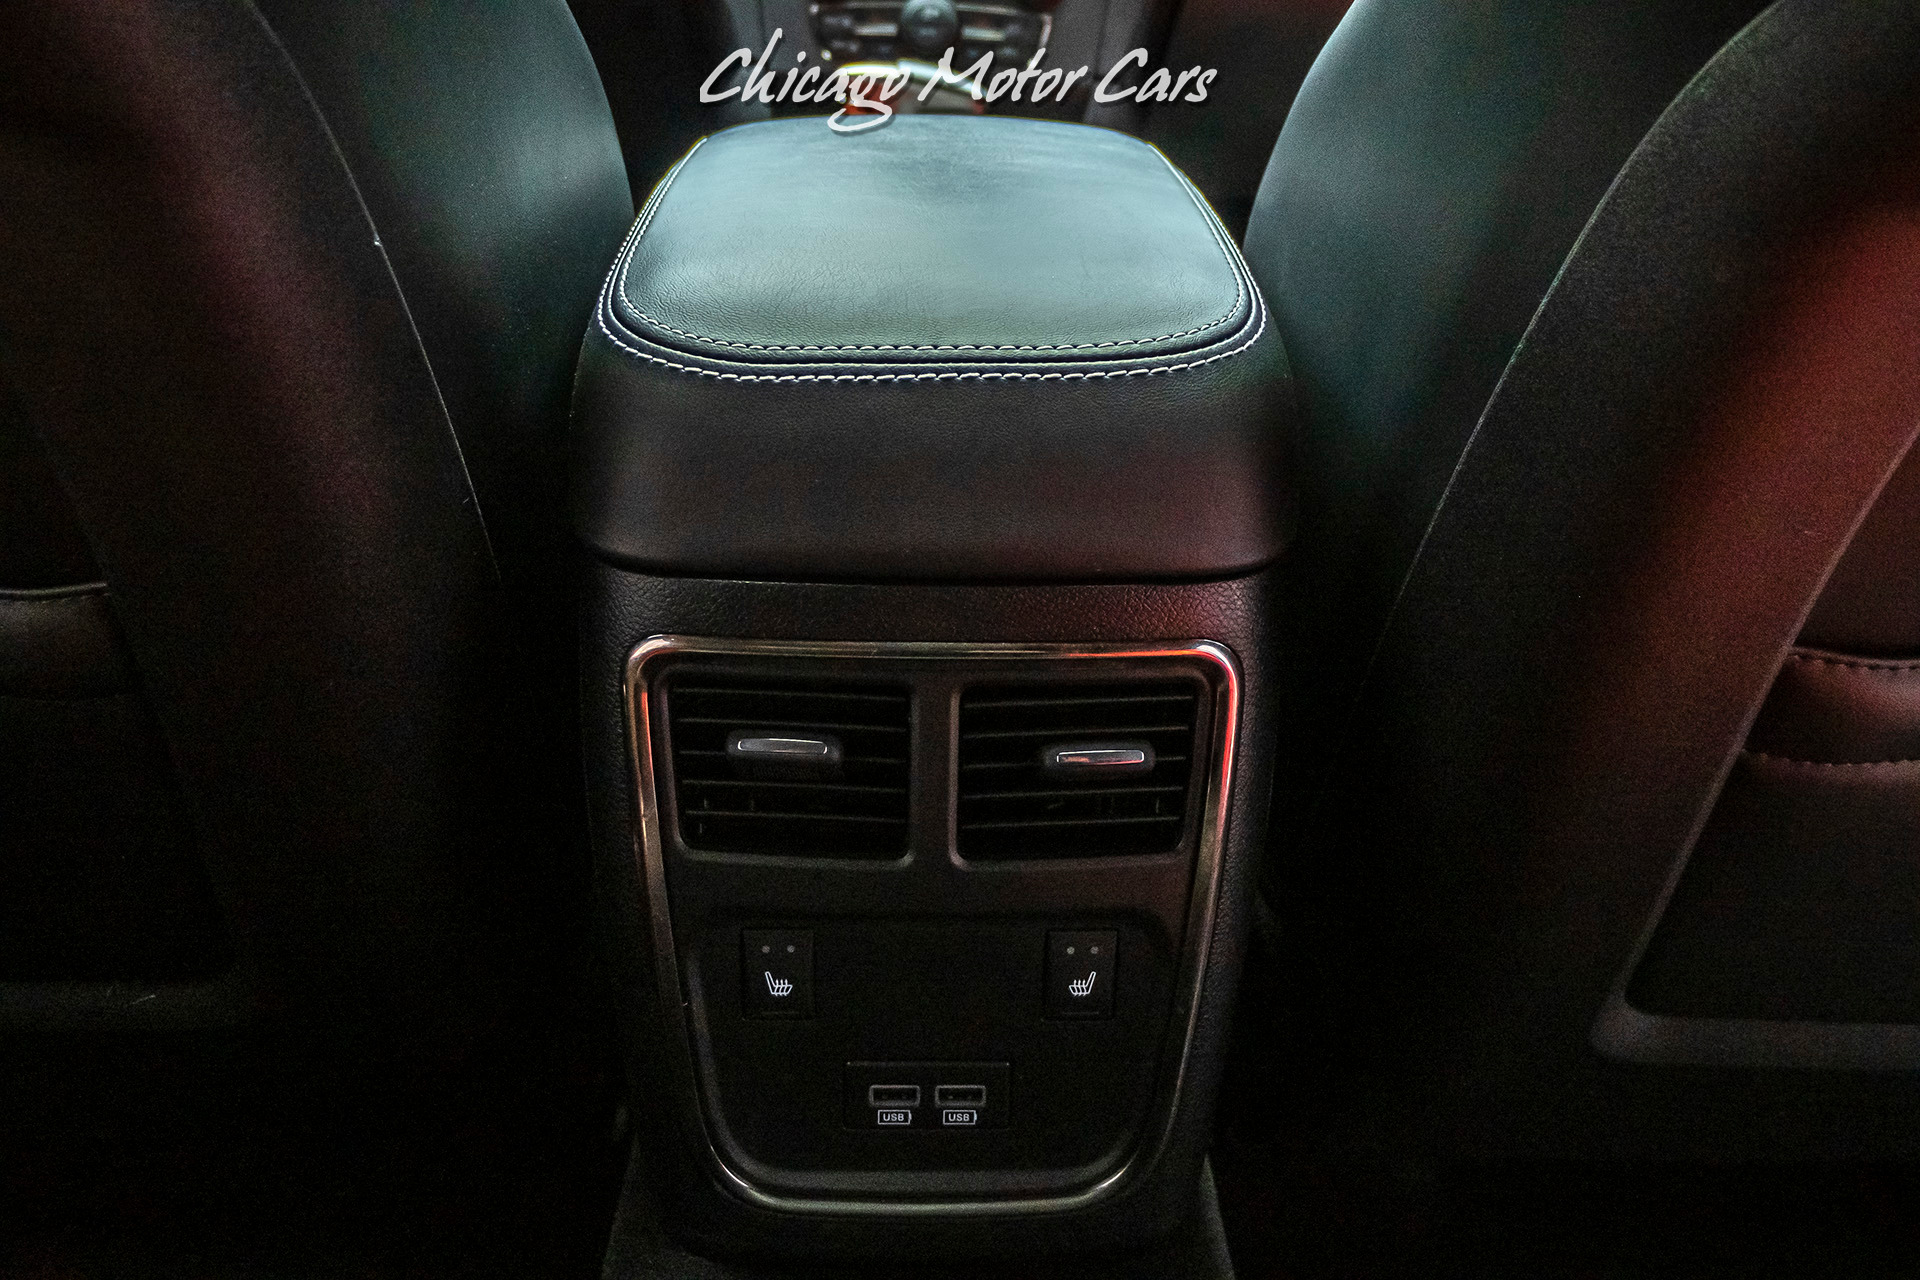 Used-2015-Dodge-Charger-SRT-Hellcat-Sedan-HARMAN-KARON-AUDIO-GROUP-POWER-SUNROOF-K-N-INTAKE